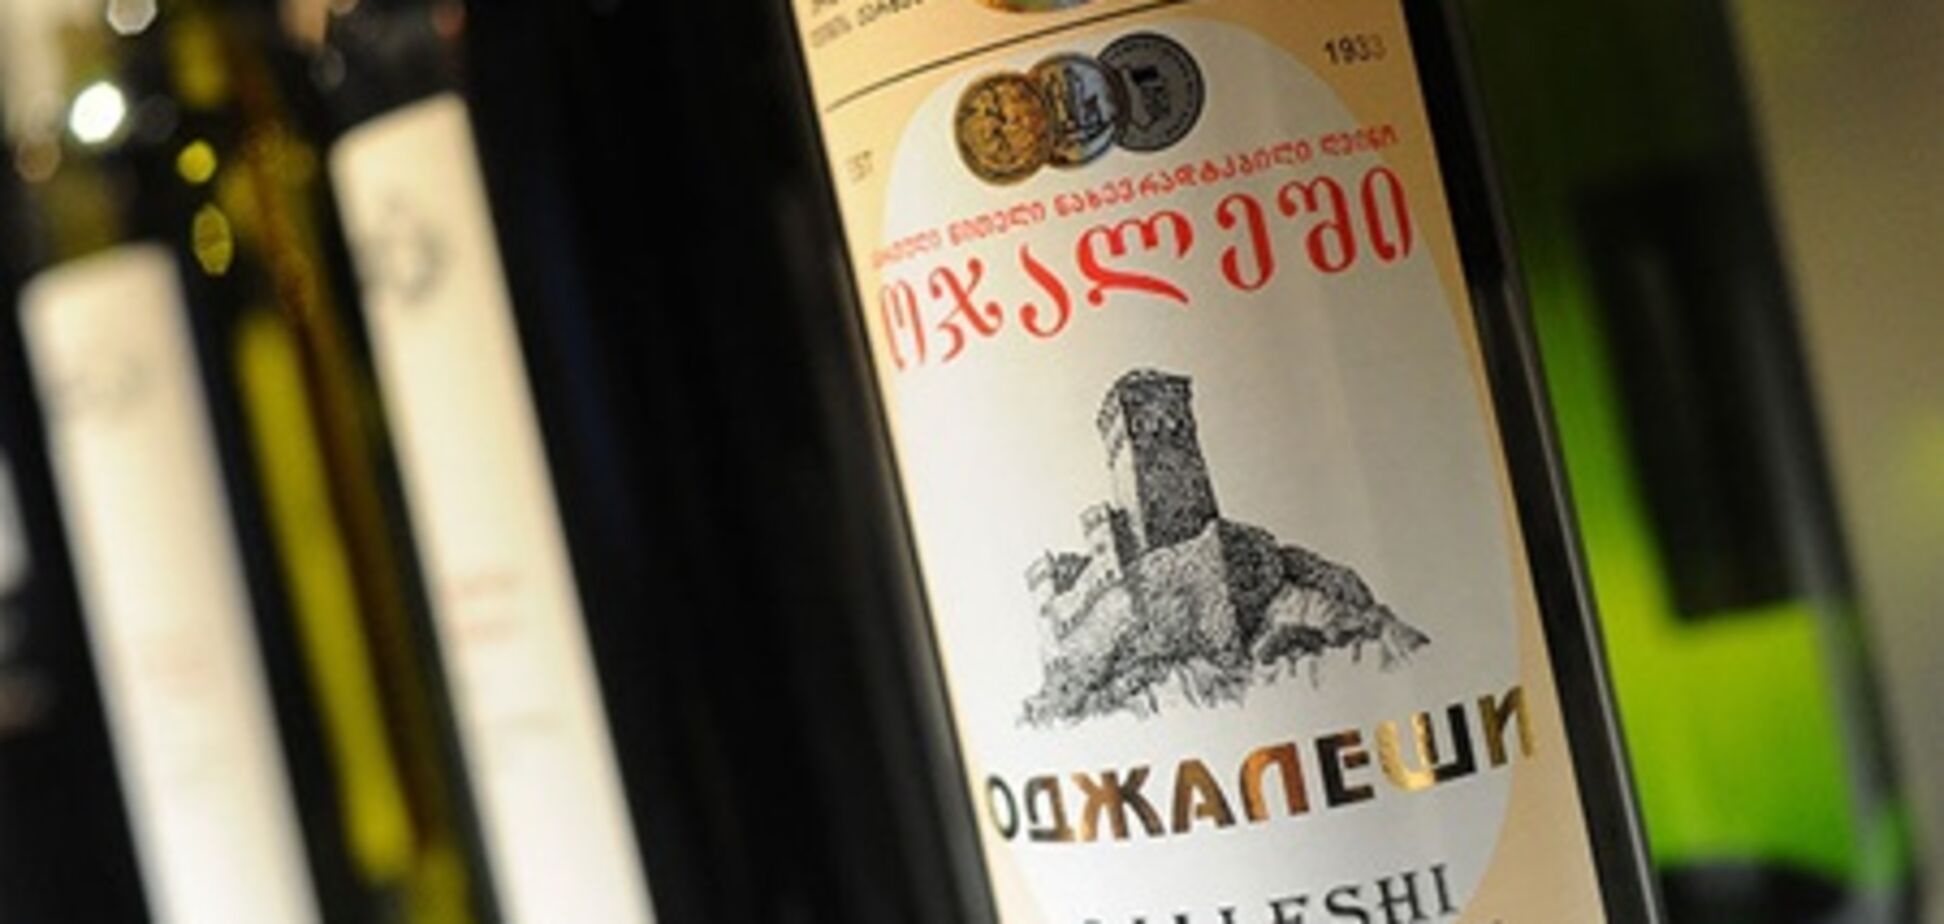 Грузинские виноделы не спешат возвращаться на российский рынок